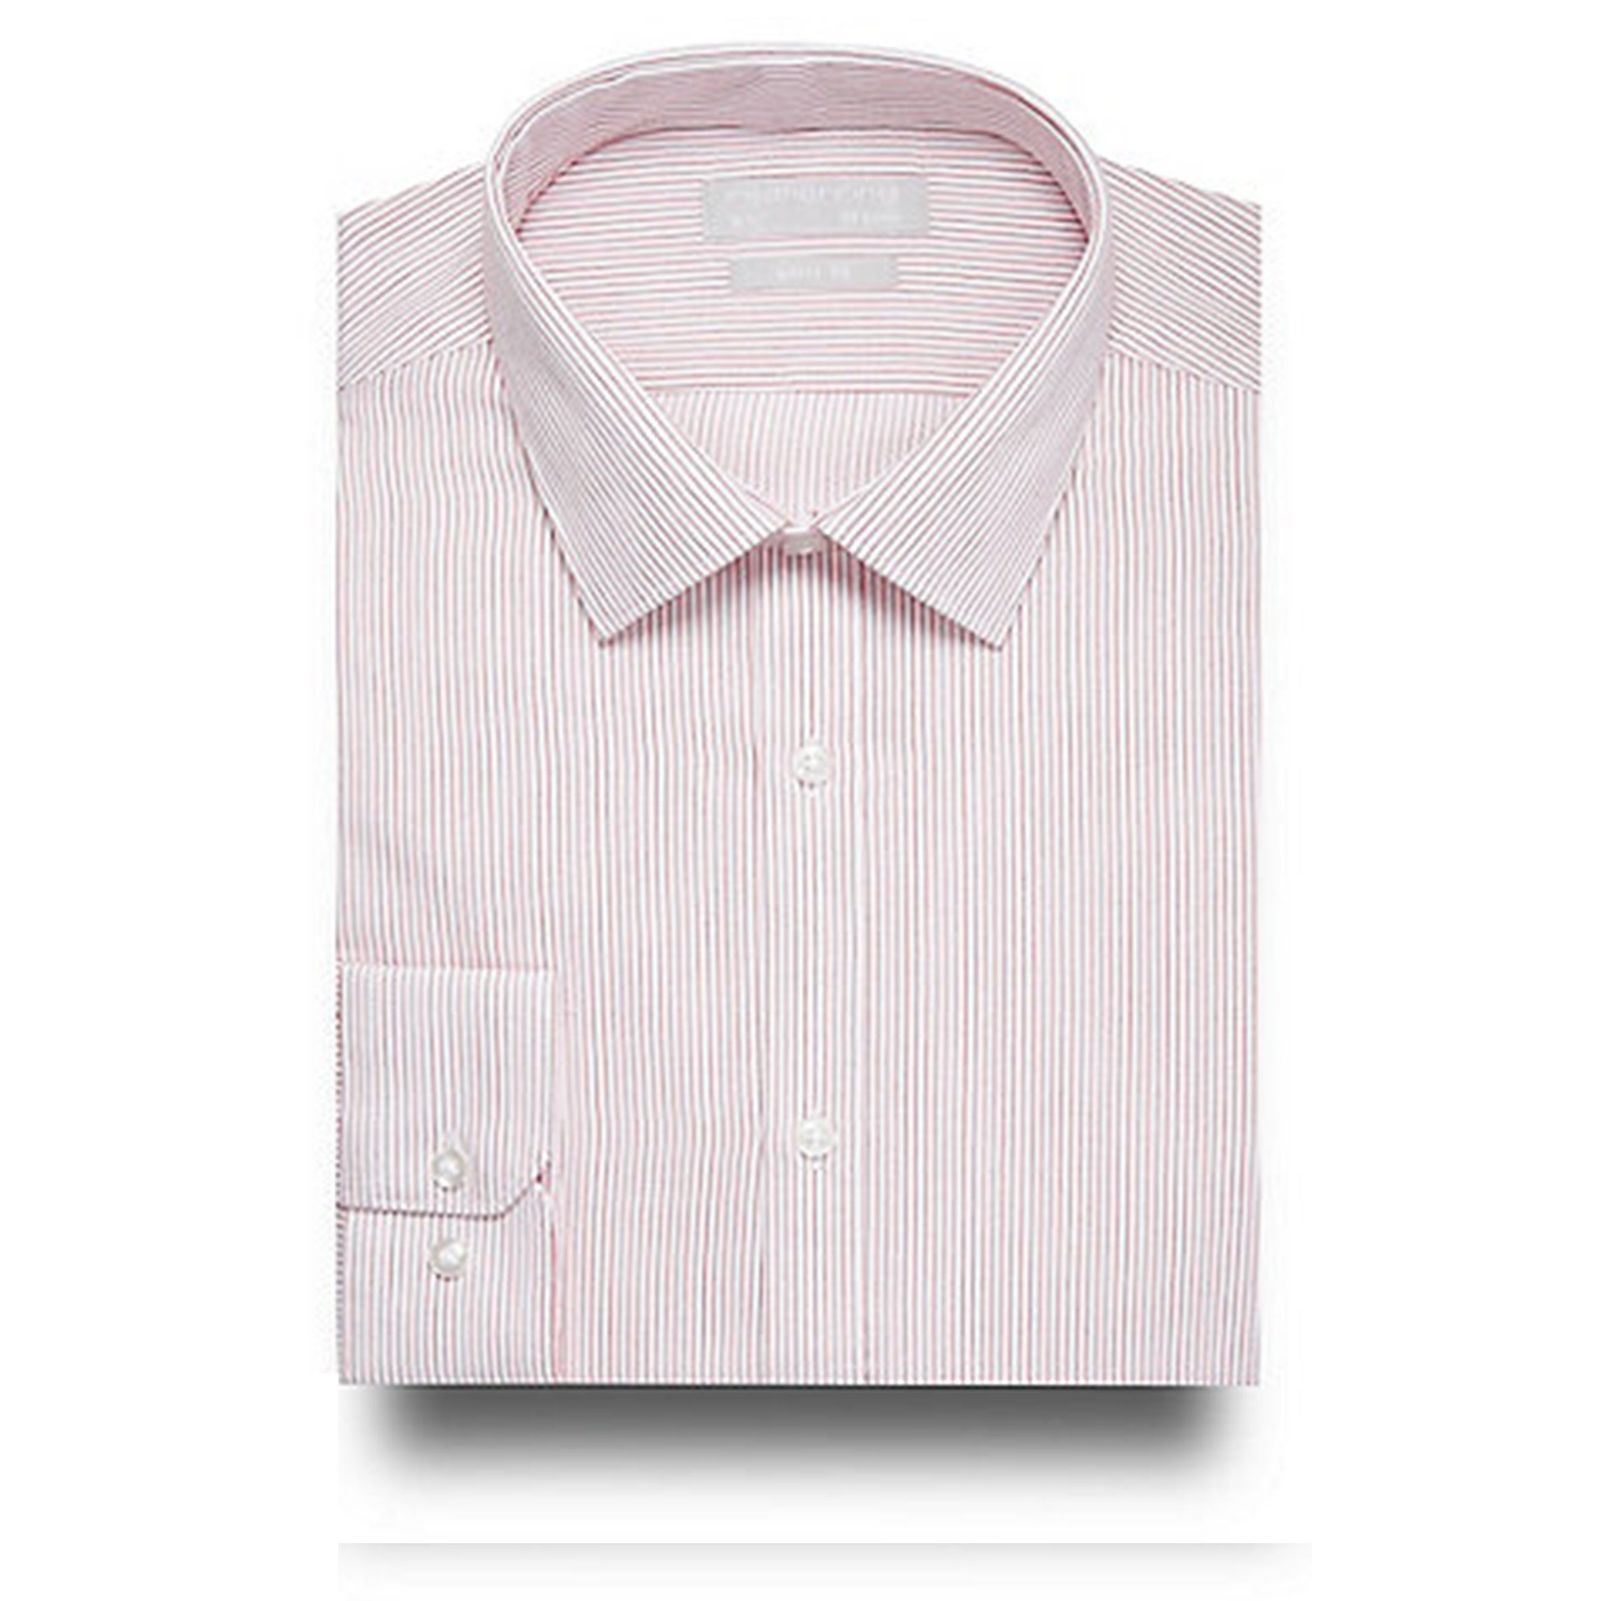 پیراهن رسمی مردانه - رد هرینگ - صورتي - 1